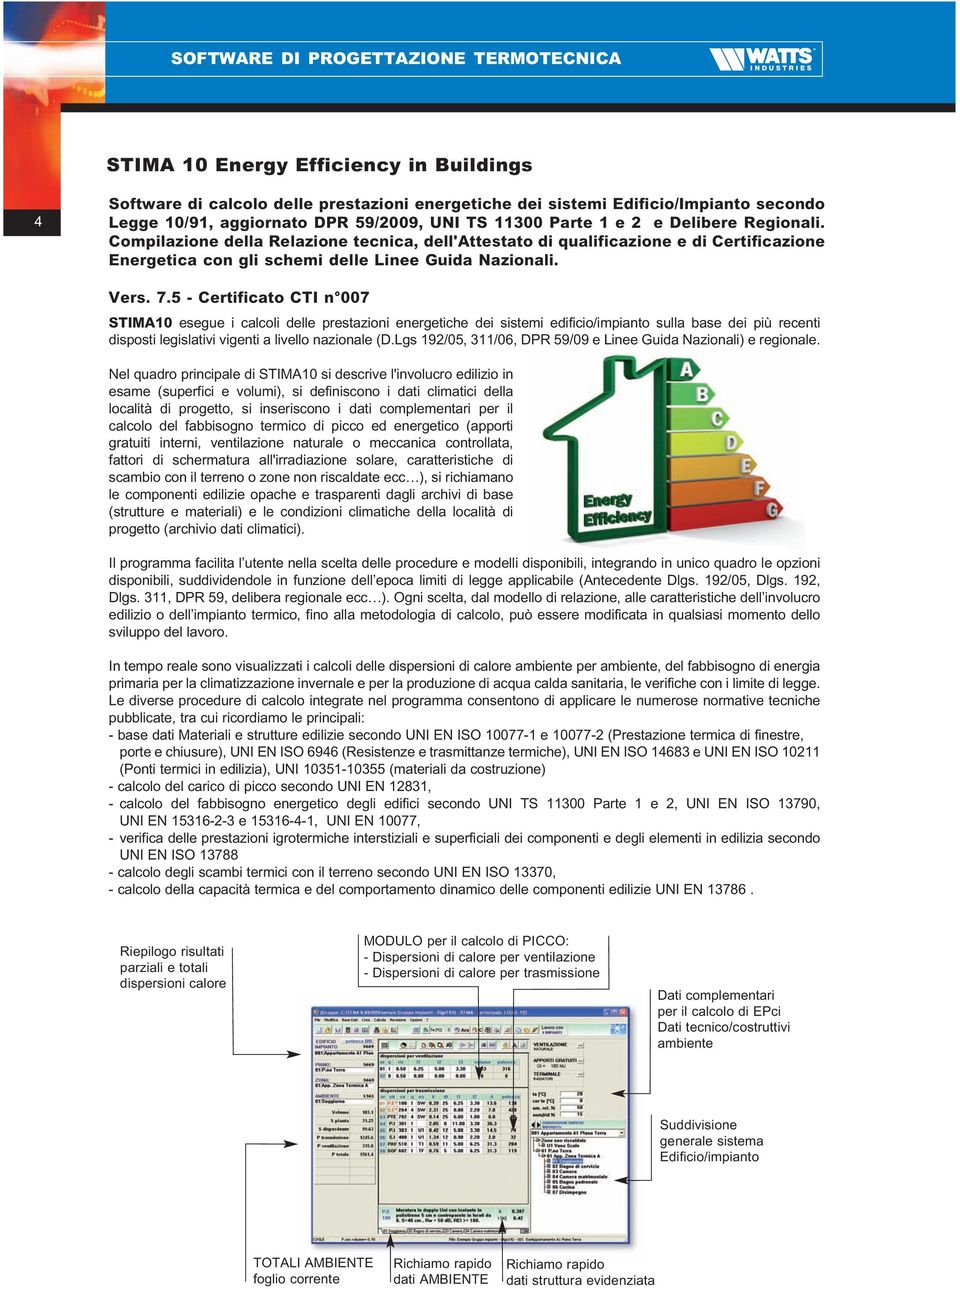 5 - Certificato CTI n 007 STIMA10 esegue i calcoli delle prestazioni energetiche dei sistemi edificio/impianto sulla base dei più recenti disposti legislativi vigenti a livello nazionale (D.